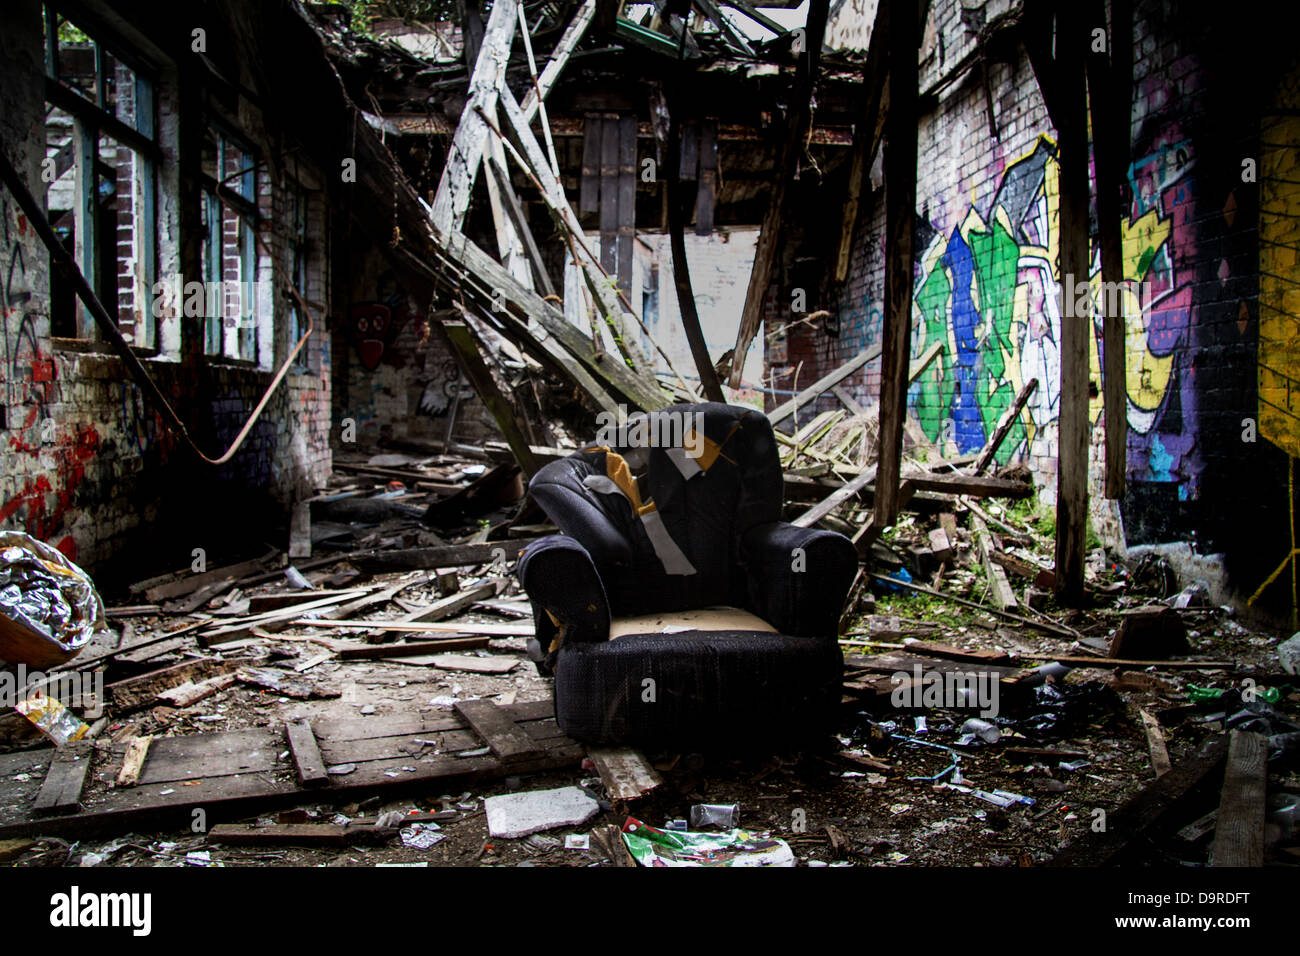 Riss-Höhle, einen alten Sessel sitzt in der Mitte einer einstürzenden Gebäude umgeben von Nadeln und anderen Drogen-Utensilien Stockfoto